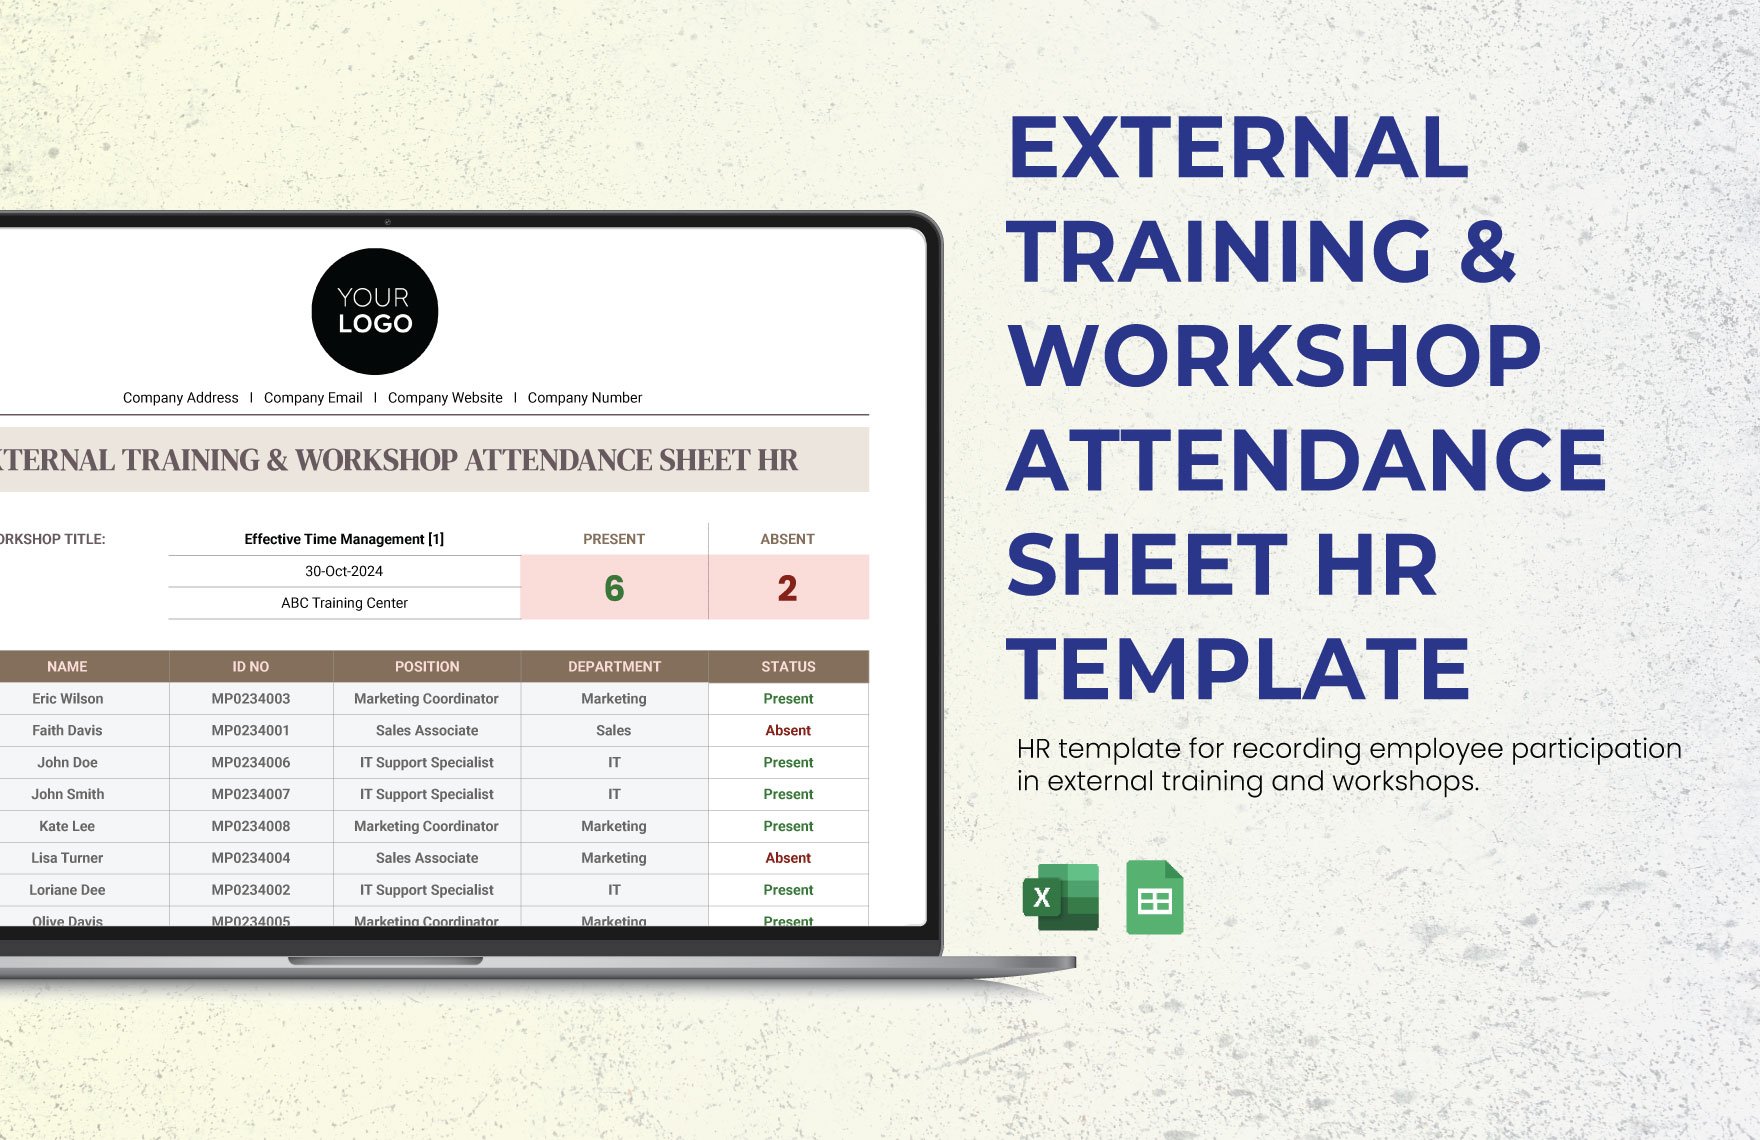 External Training & Workshop Attendance Sheet HR Template